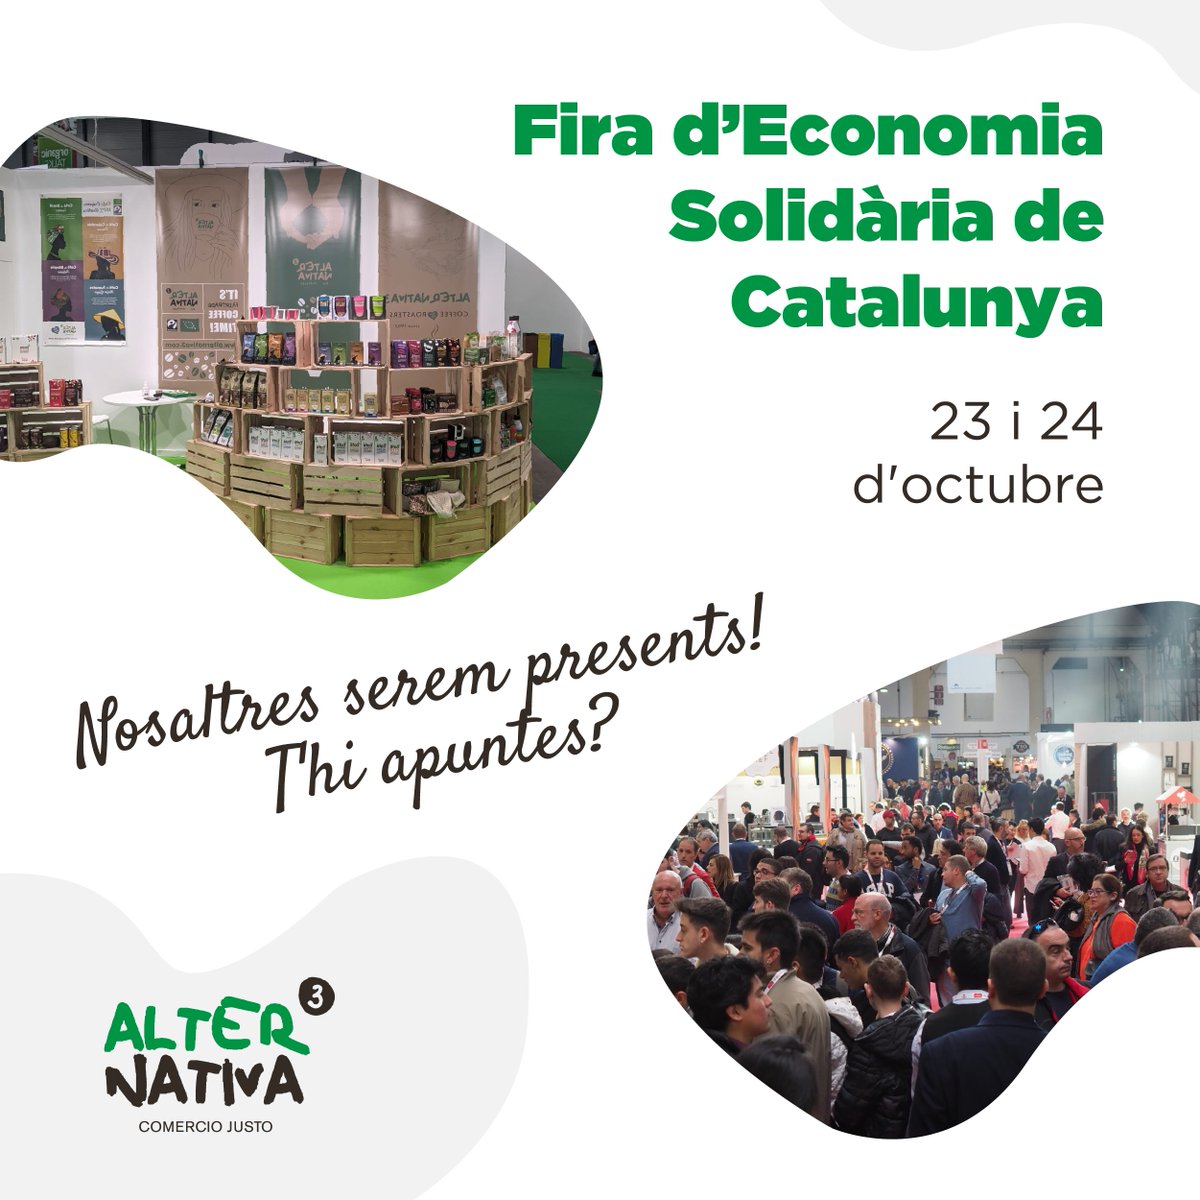 📣 ¡Ven a vernos a la Fira d’Economia Solidària de Catalunya (FESC)! ¡La FESC presencial será este fin de semana! ¿Dónde? En las instalaciones de la Fabra y Coats, St. Andreu, Barcelona. ¡Os esperamos a todas! 🙌 #FESC2021